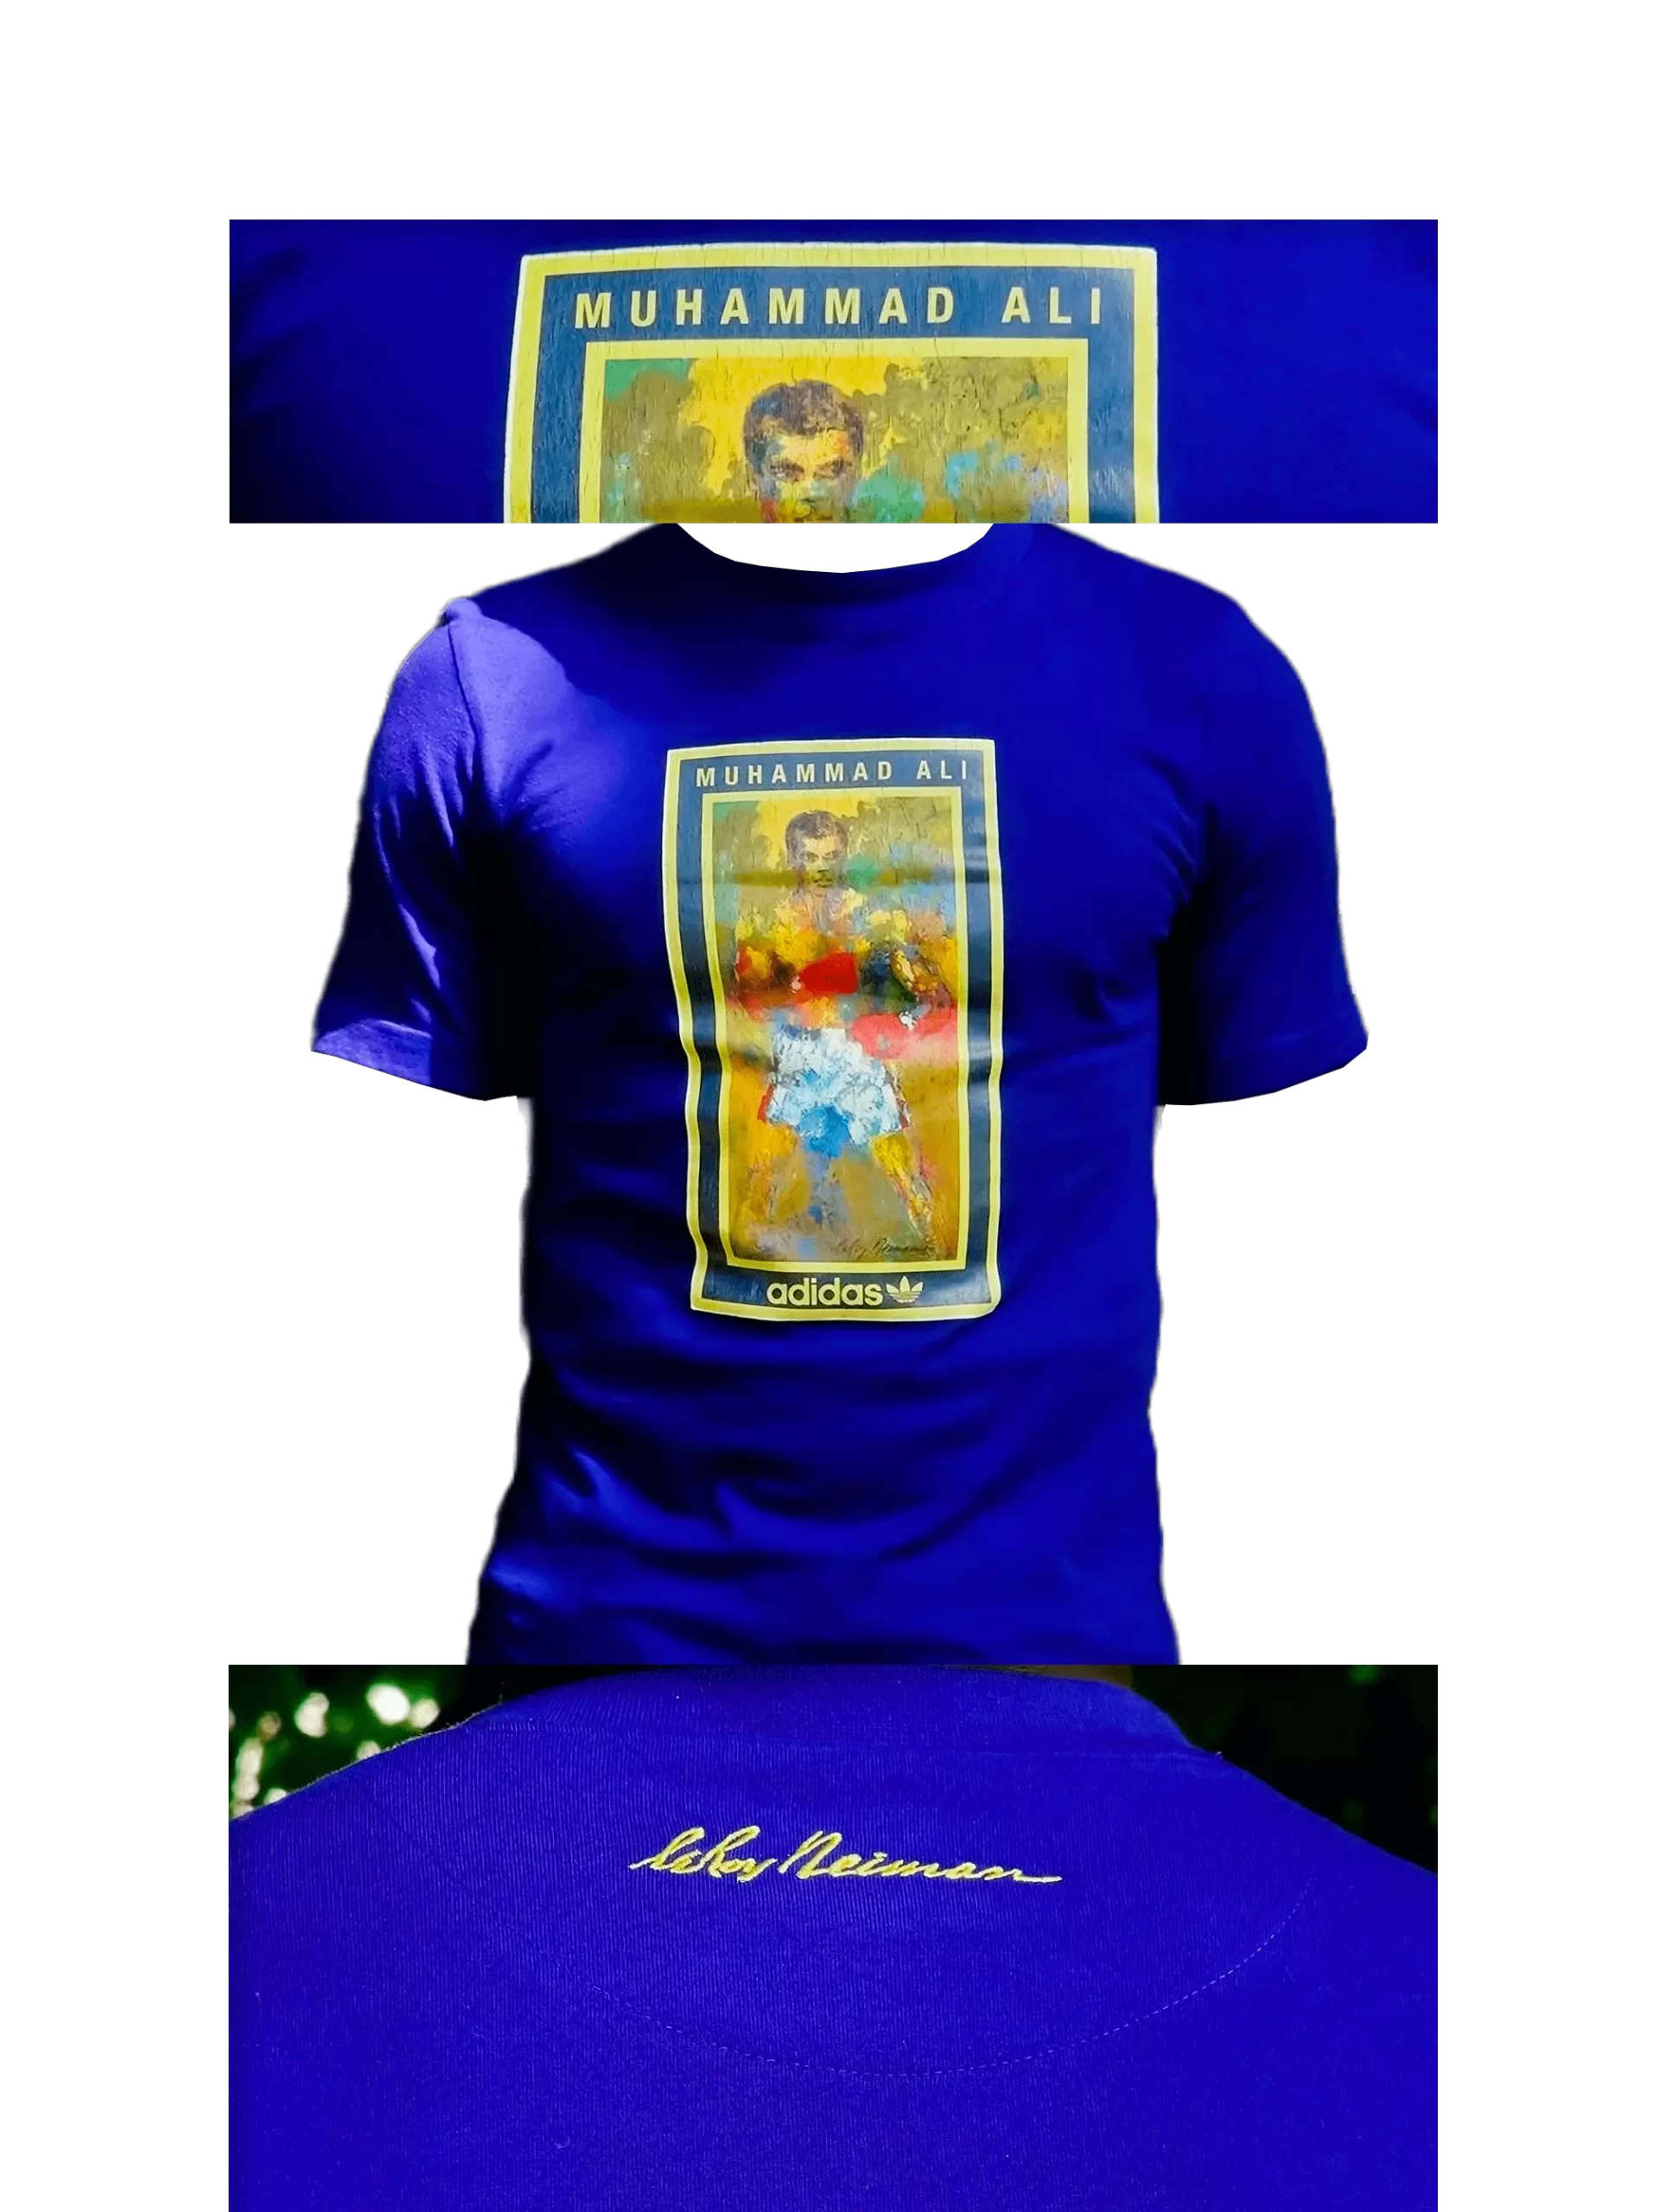 Men's 2007 Muhammad Ali Respect T-Shirt by Adidas: Tawdry (EnLawded.com file #lmchk78833ip2y124874kg9st)